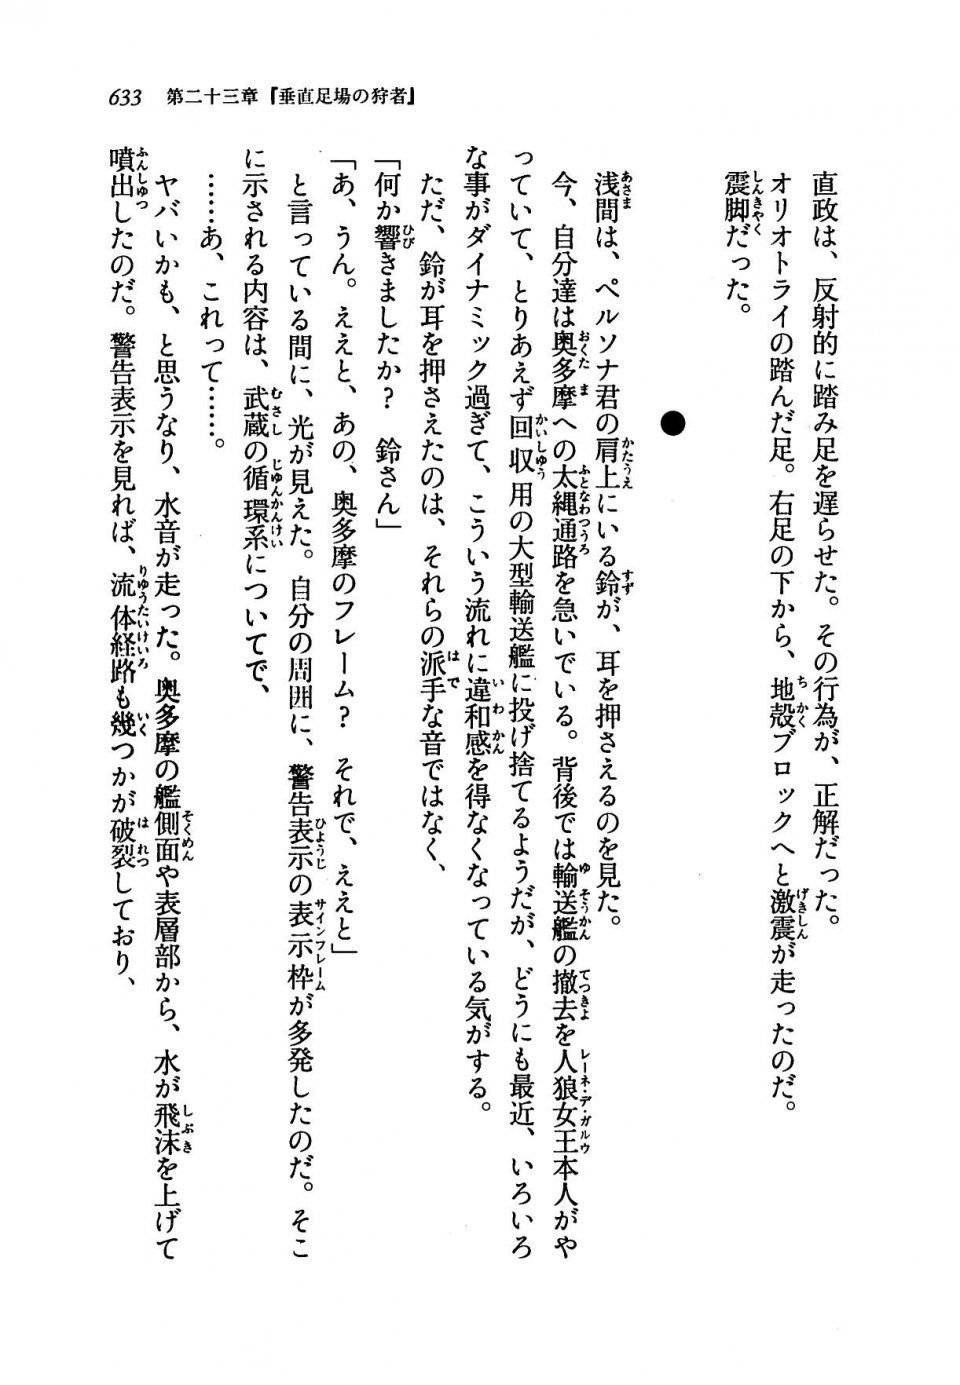 Kyoukai Senjou no Horizon LN Vol 19(8A) - Photo #633